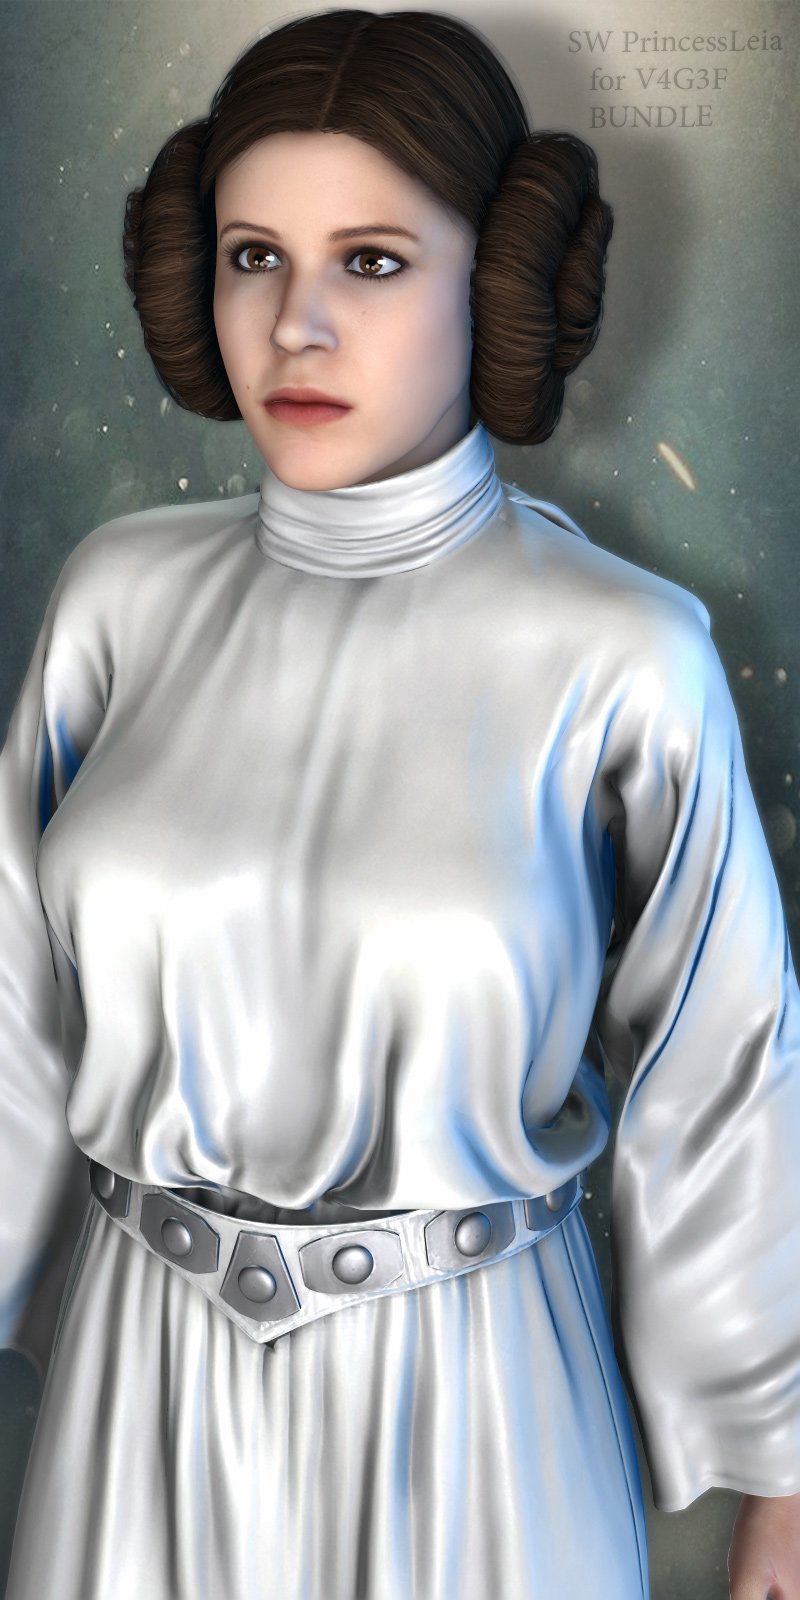 SW Princess Leia Bundle for V4G3F (repost)